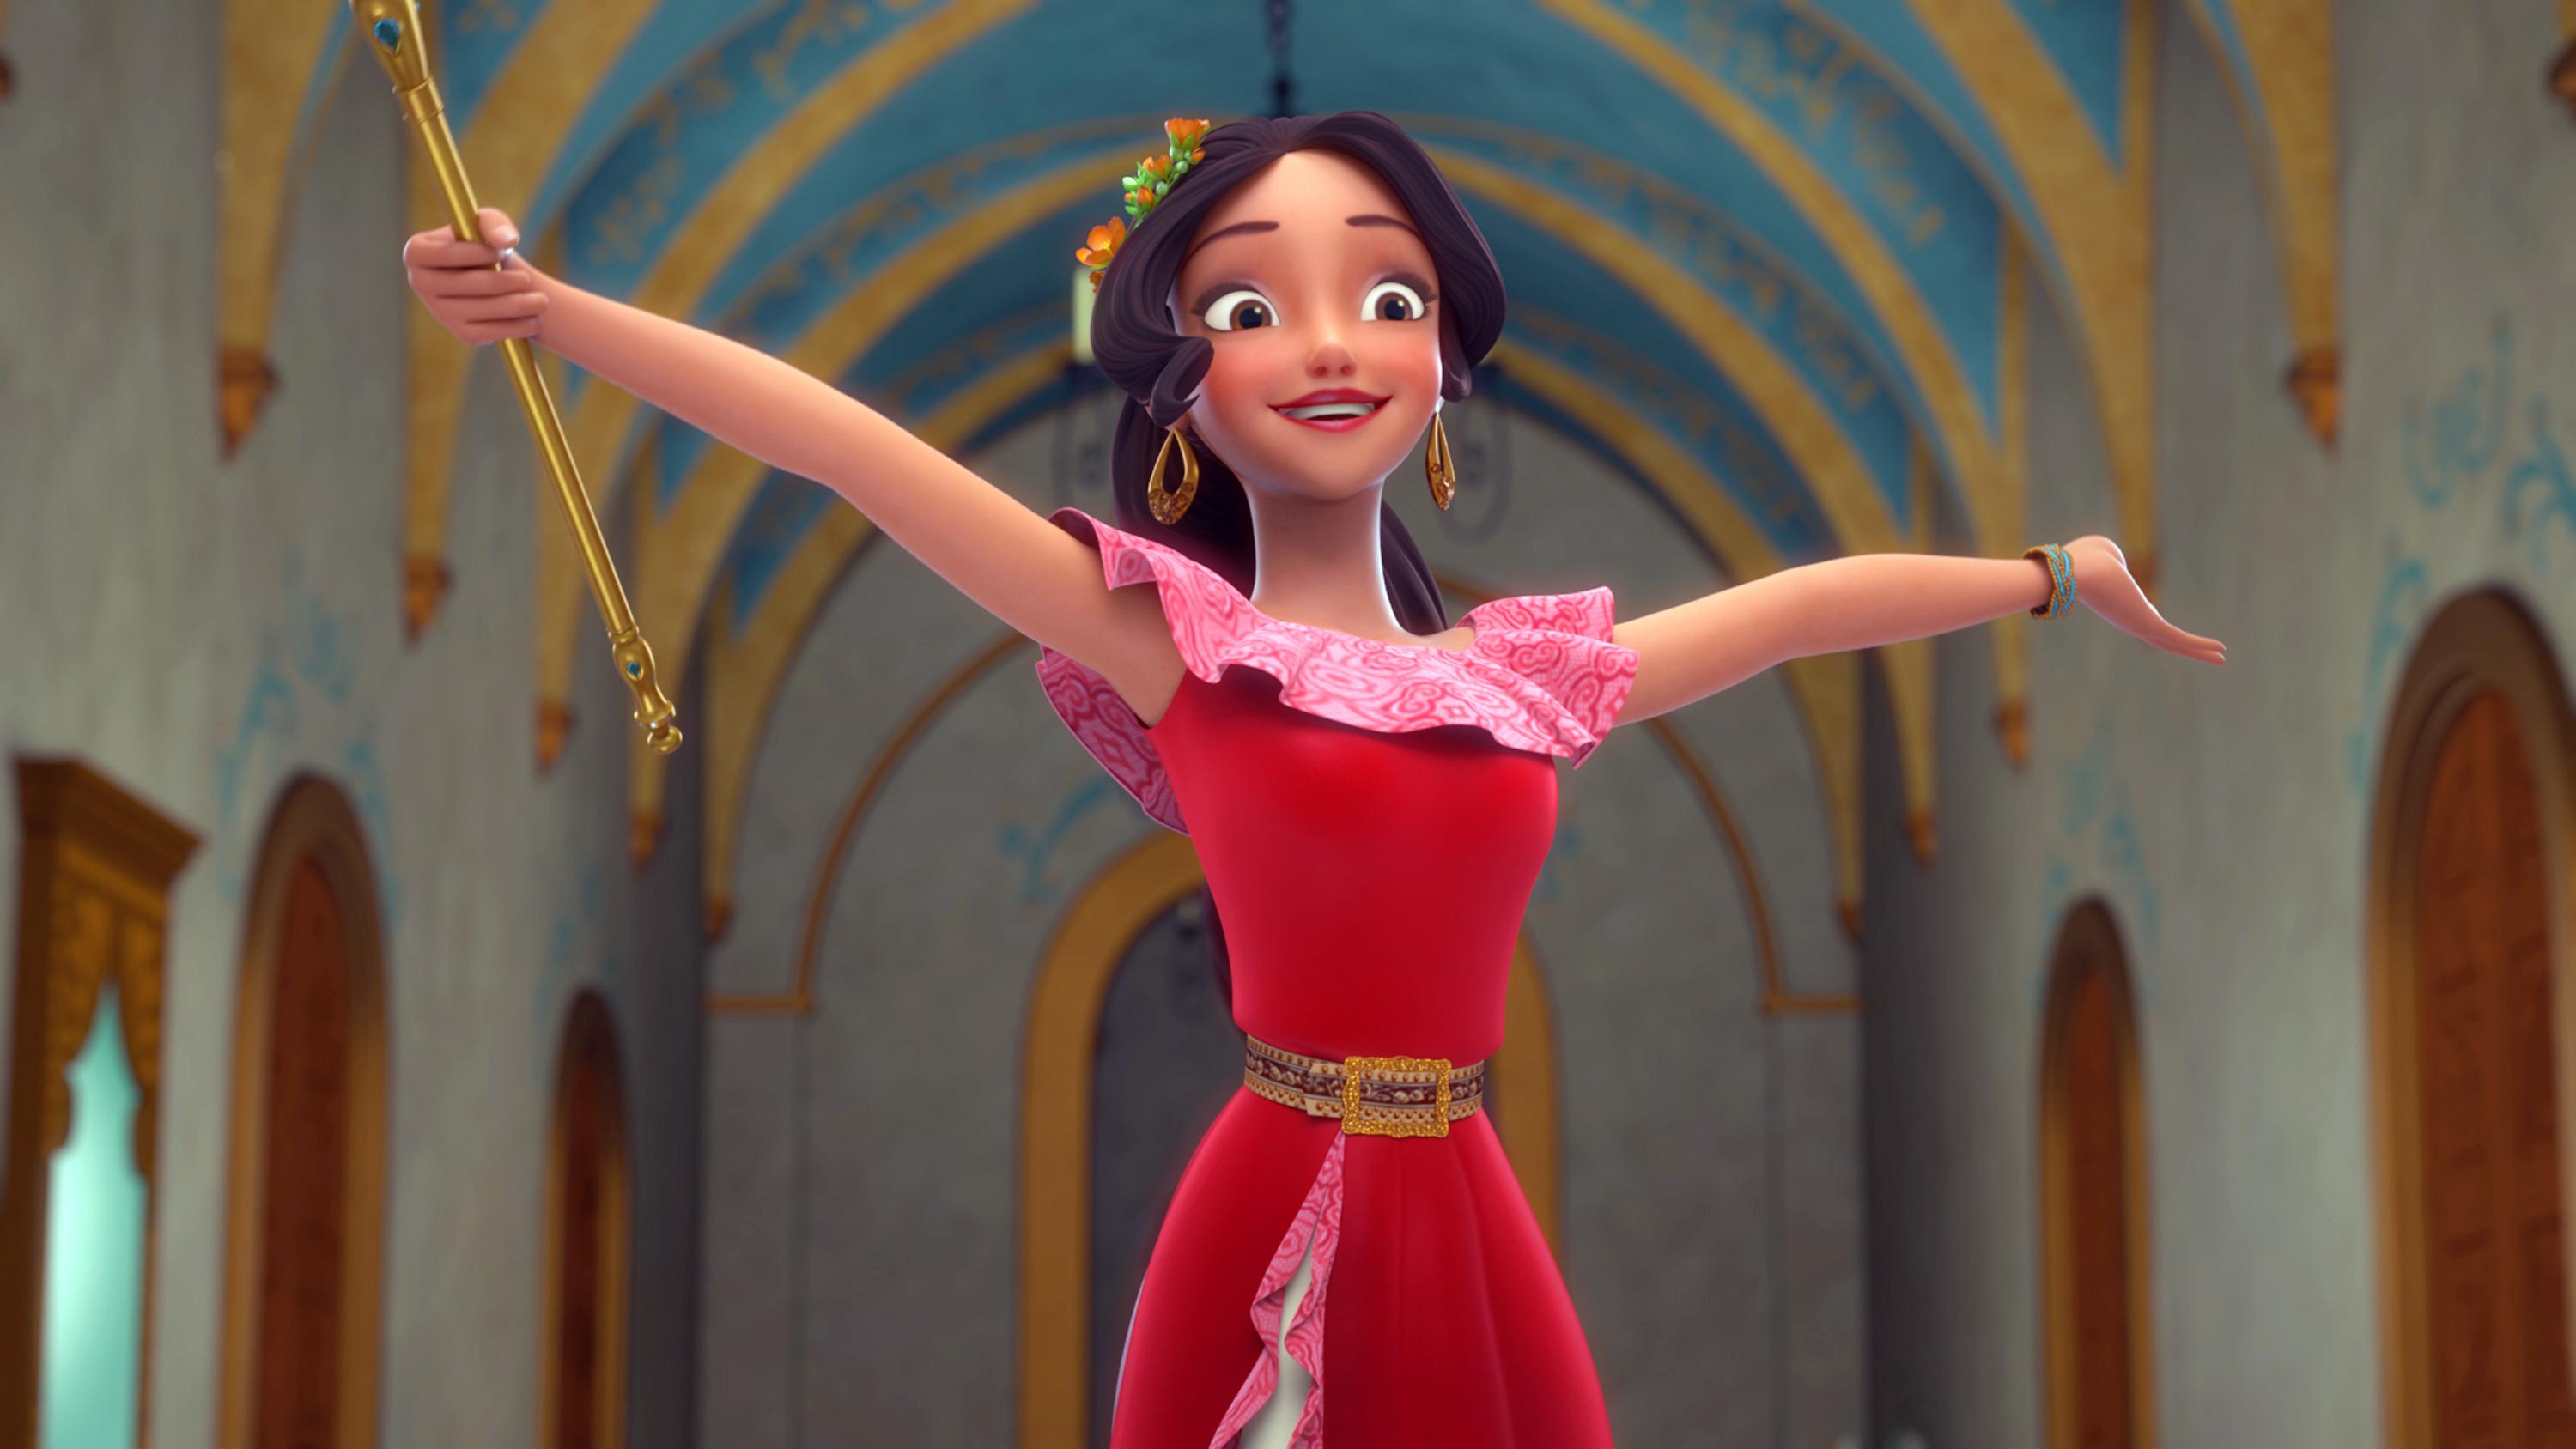 Disney S First Latina Princess Elena Takes Her Bow On Tv The Spokesman Review